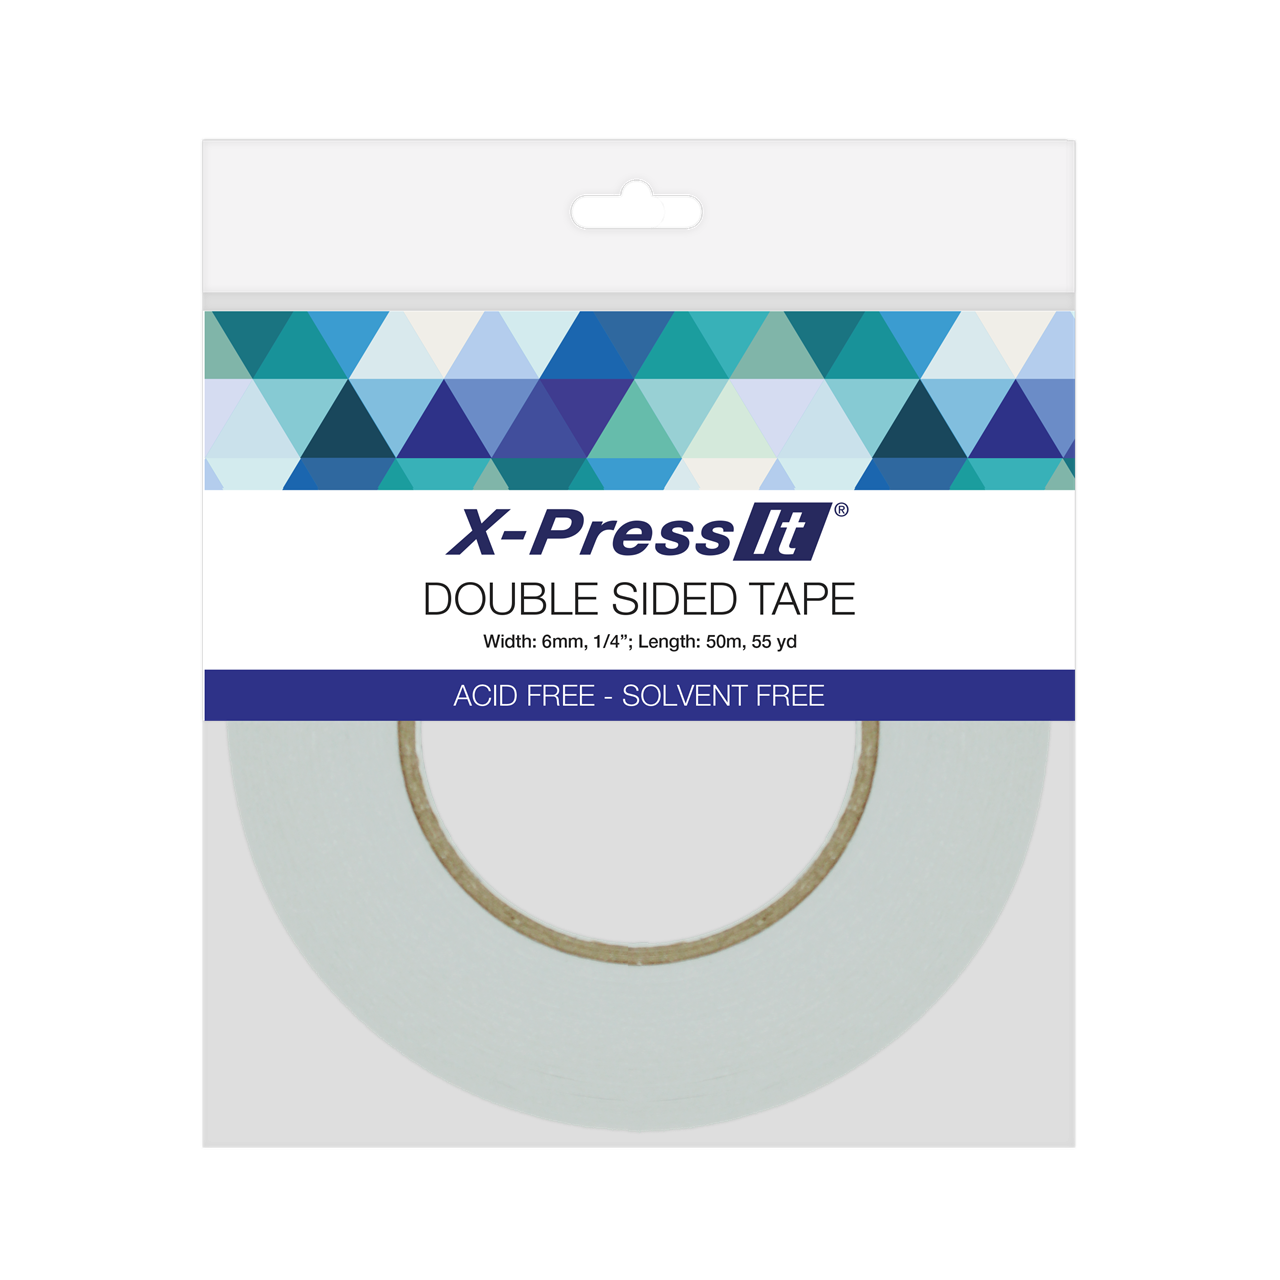 X-Press It Clear Gel Glue — X-Press It